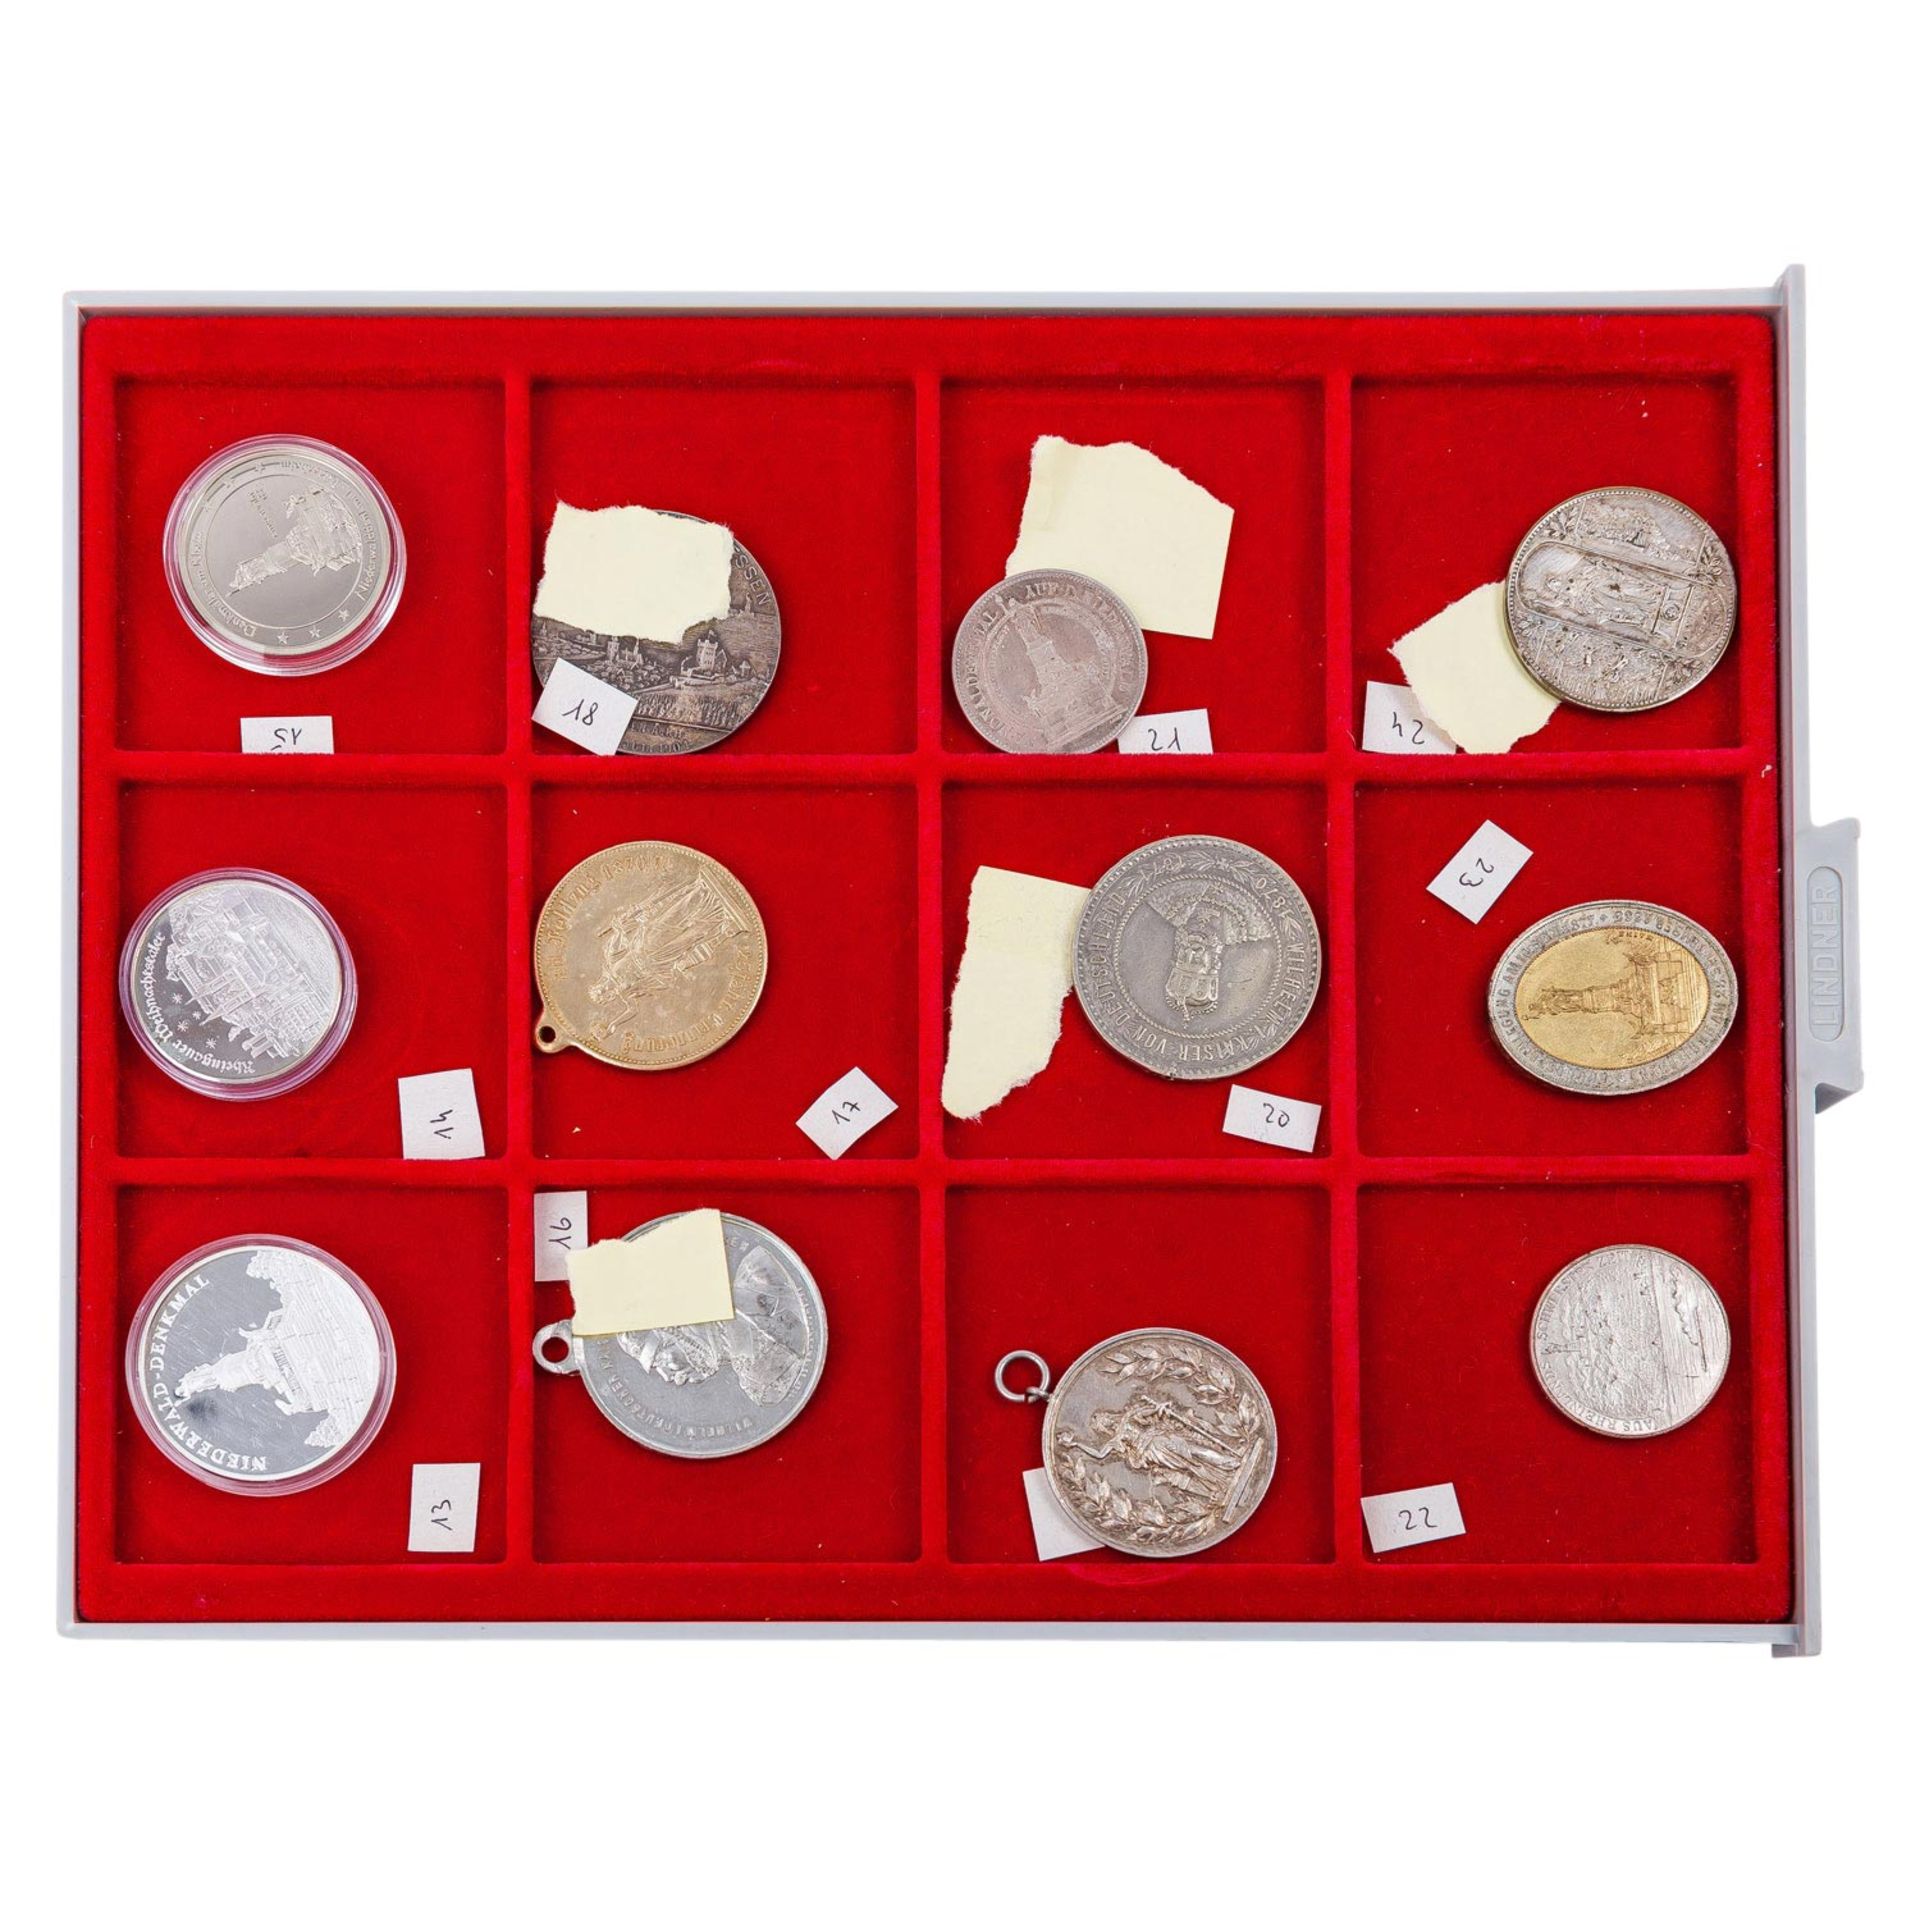 Umfangreiche Sammlung an Plaketten, Medaillen, Medaillons, Abzeichen etc. mit dem nationalen Niederw - Image 4 of 9